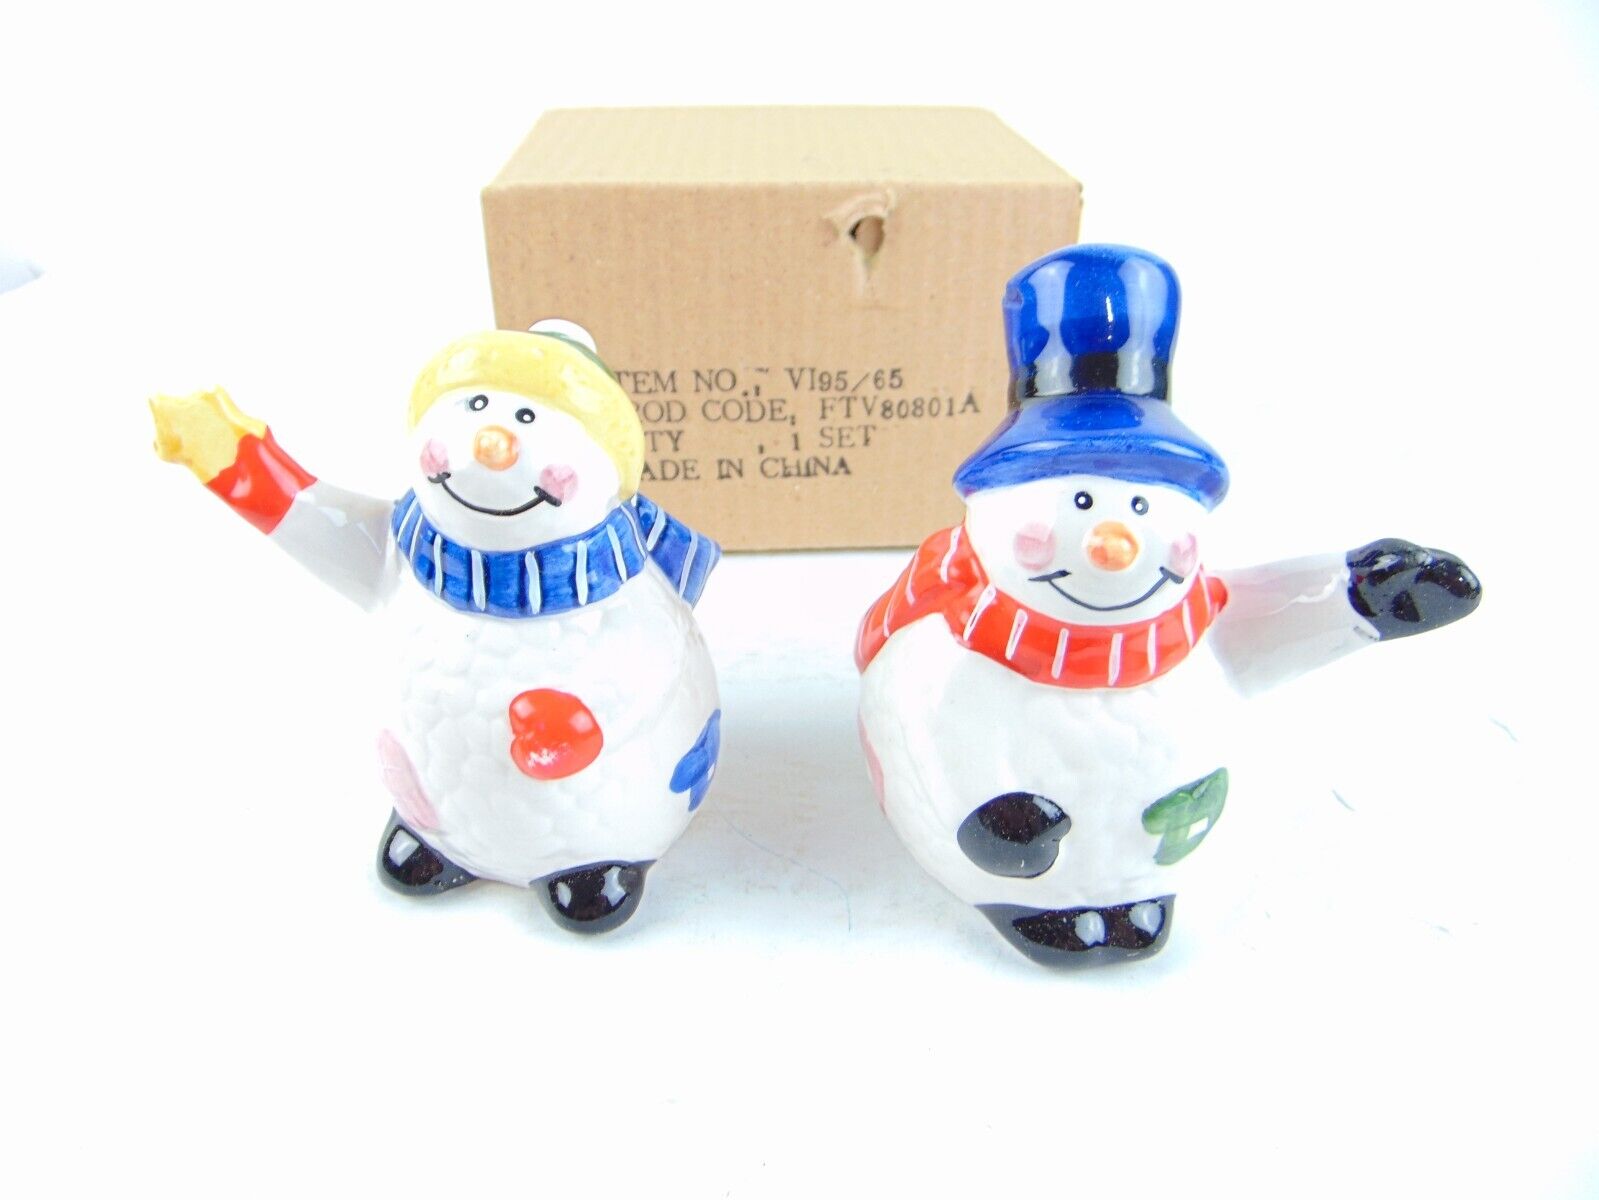 Vintage Terry's Village Snowman Salt & Pepper Set 95/65